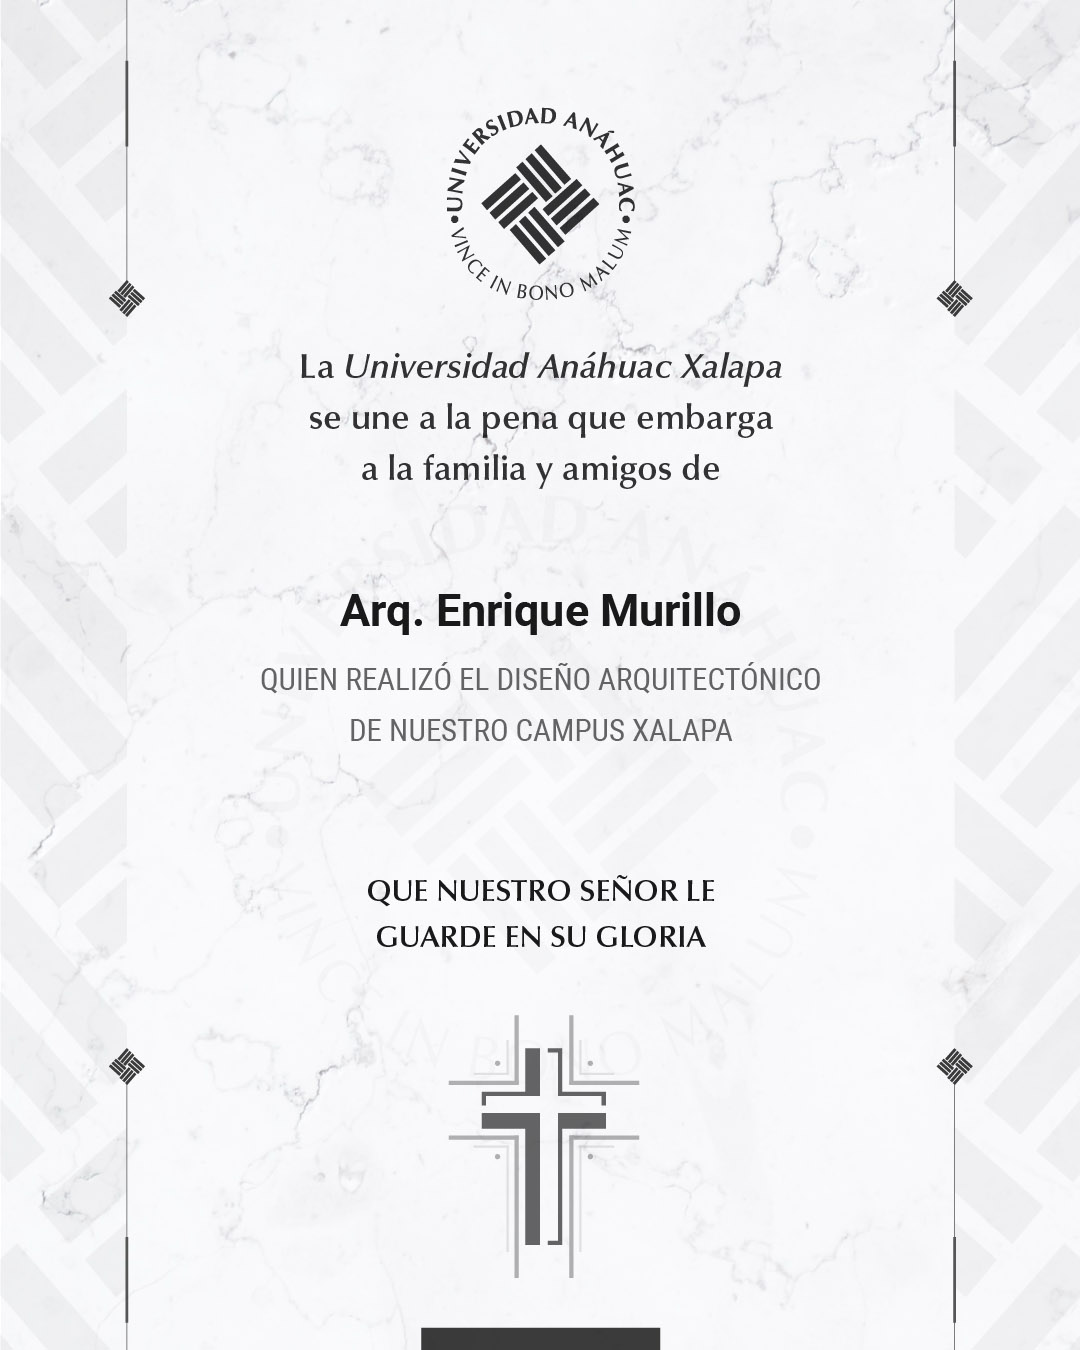 14 / 18 - Arq. Enrique Murillo